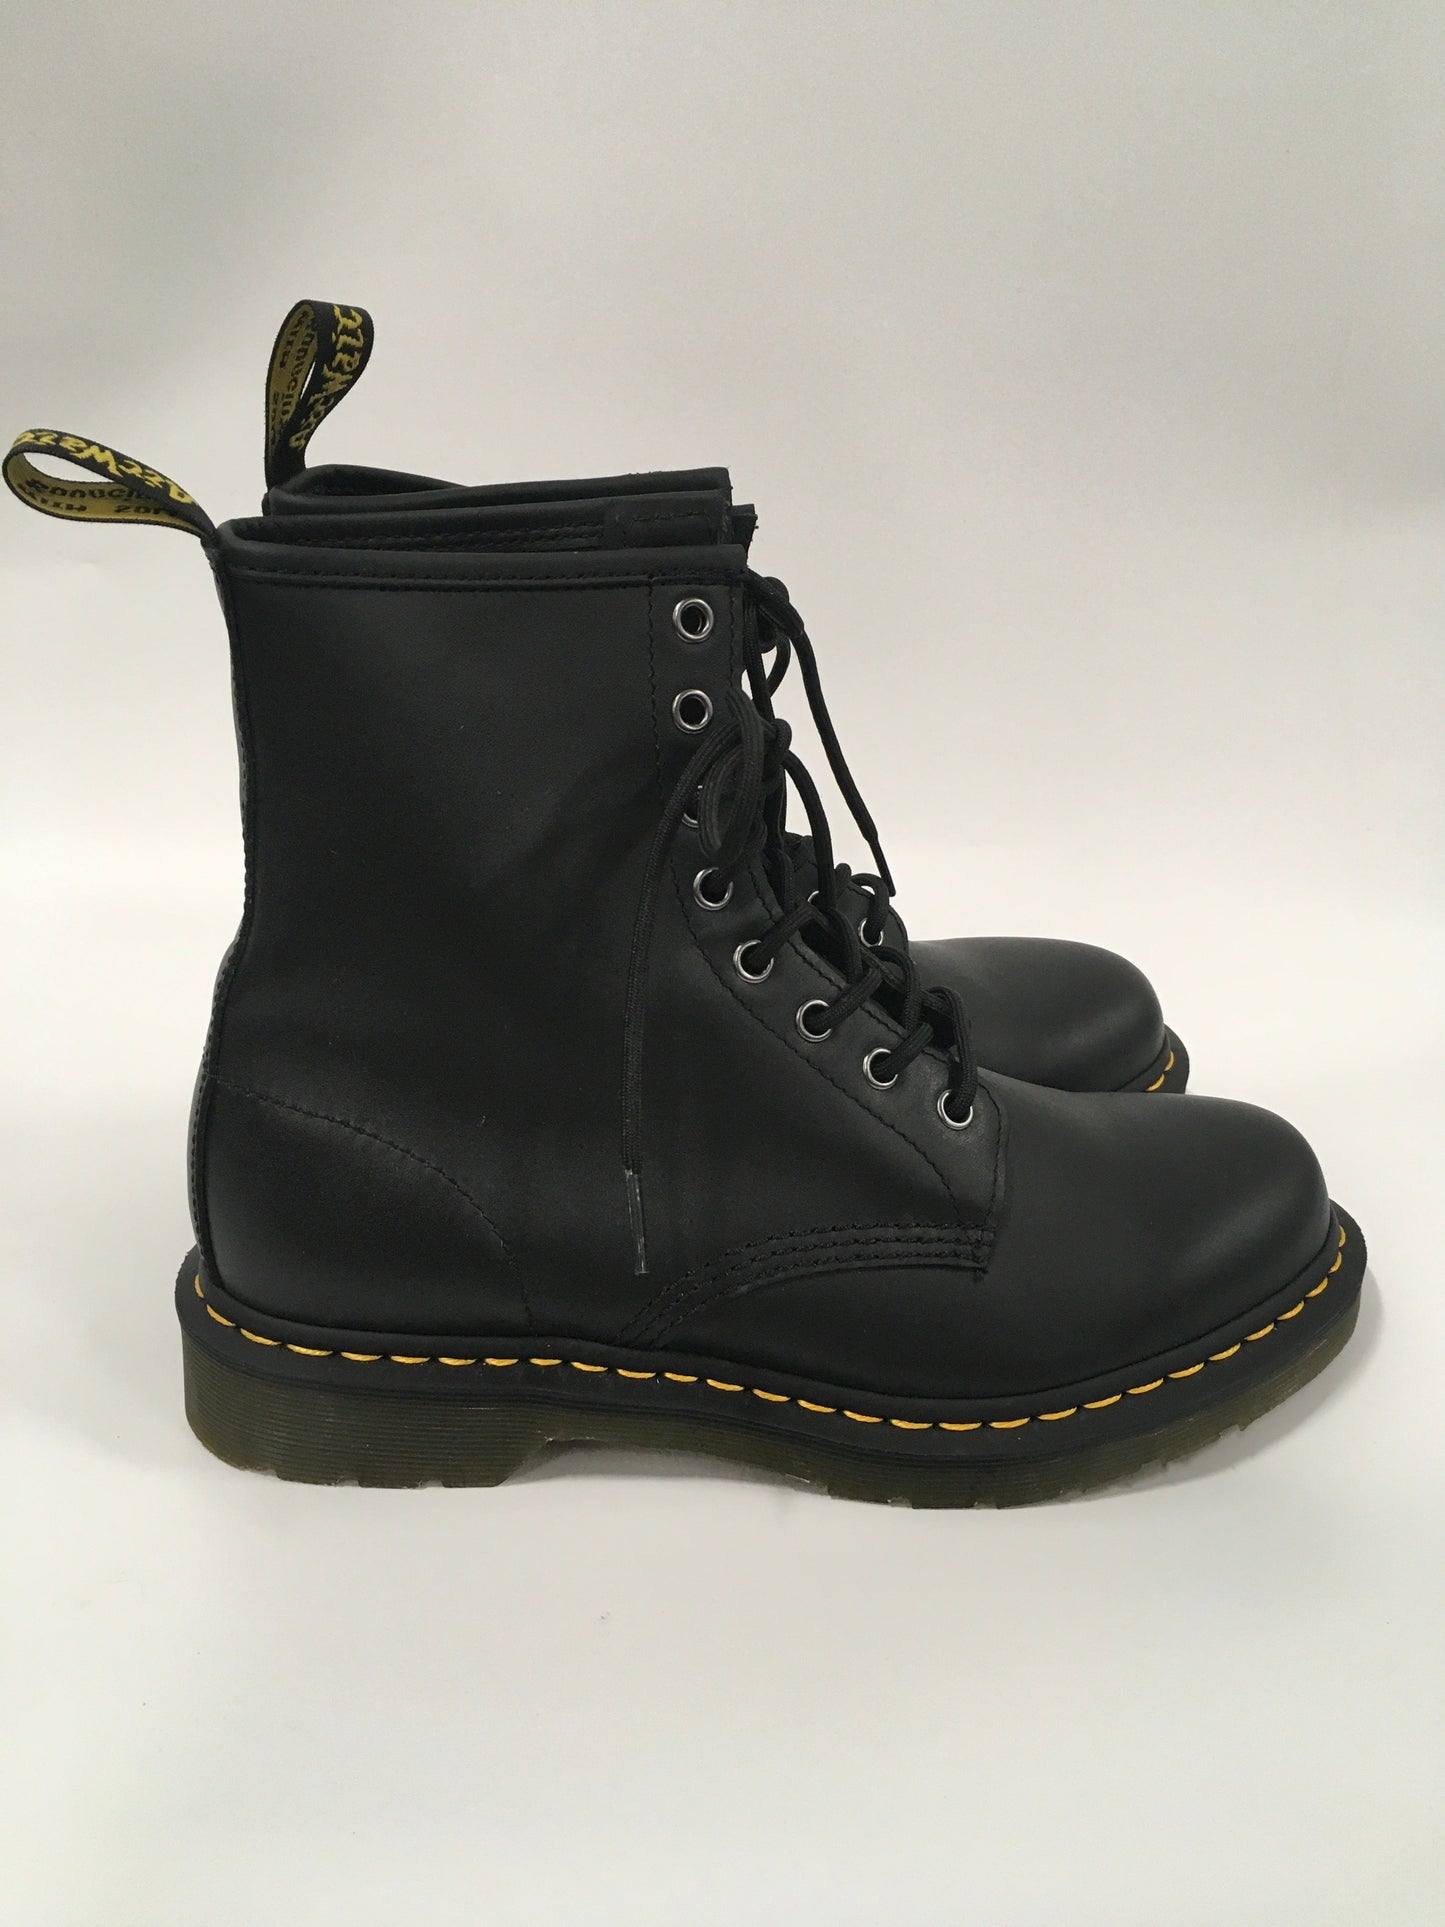 Black Boots Combat Dr Martens, Size 10